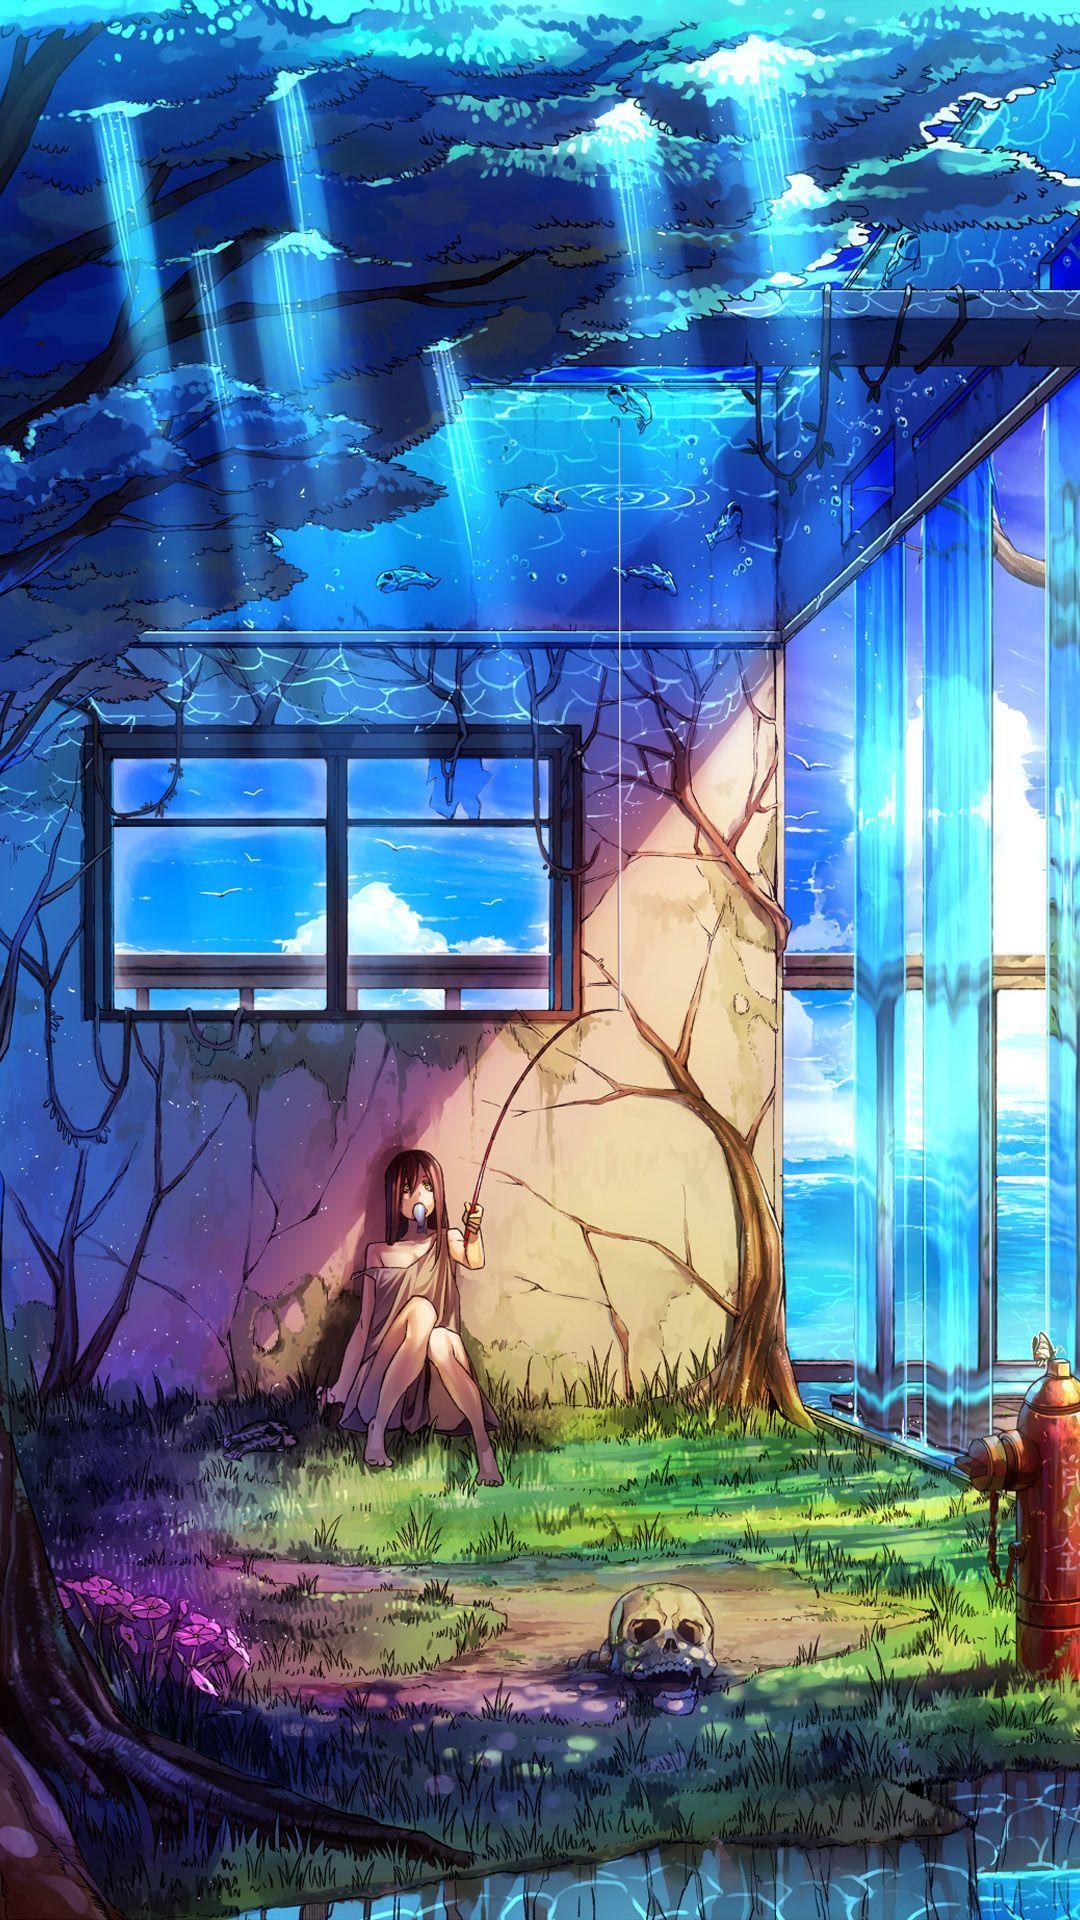 45+] Beautiful Anime Girl Wallpaper - WallpaperSafari